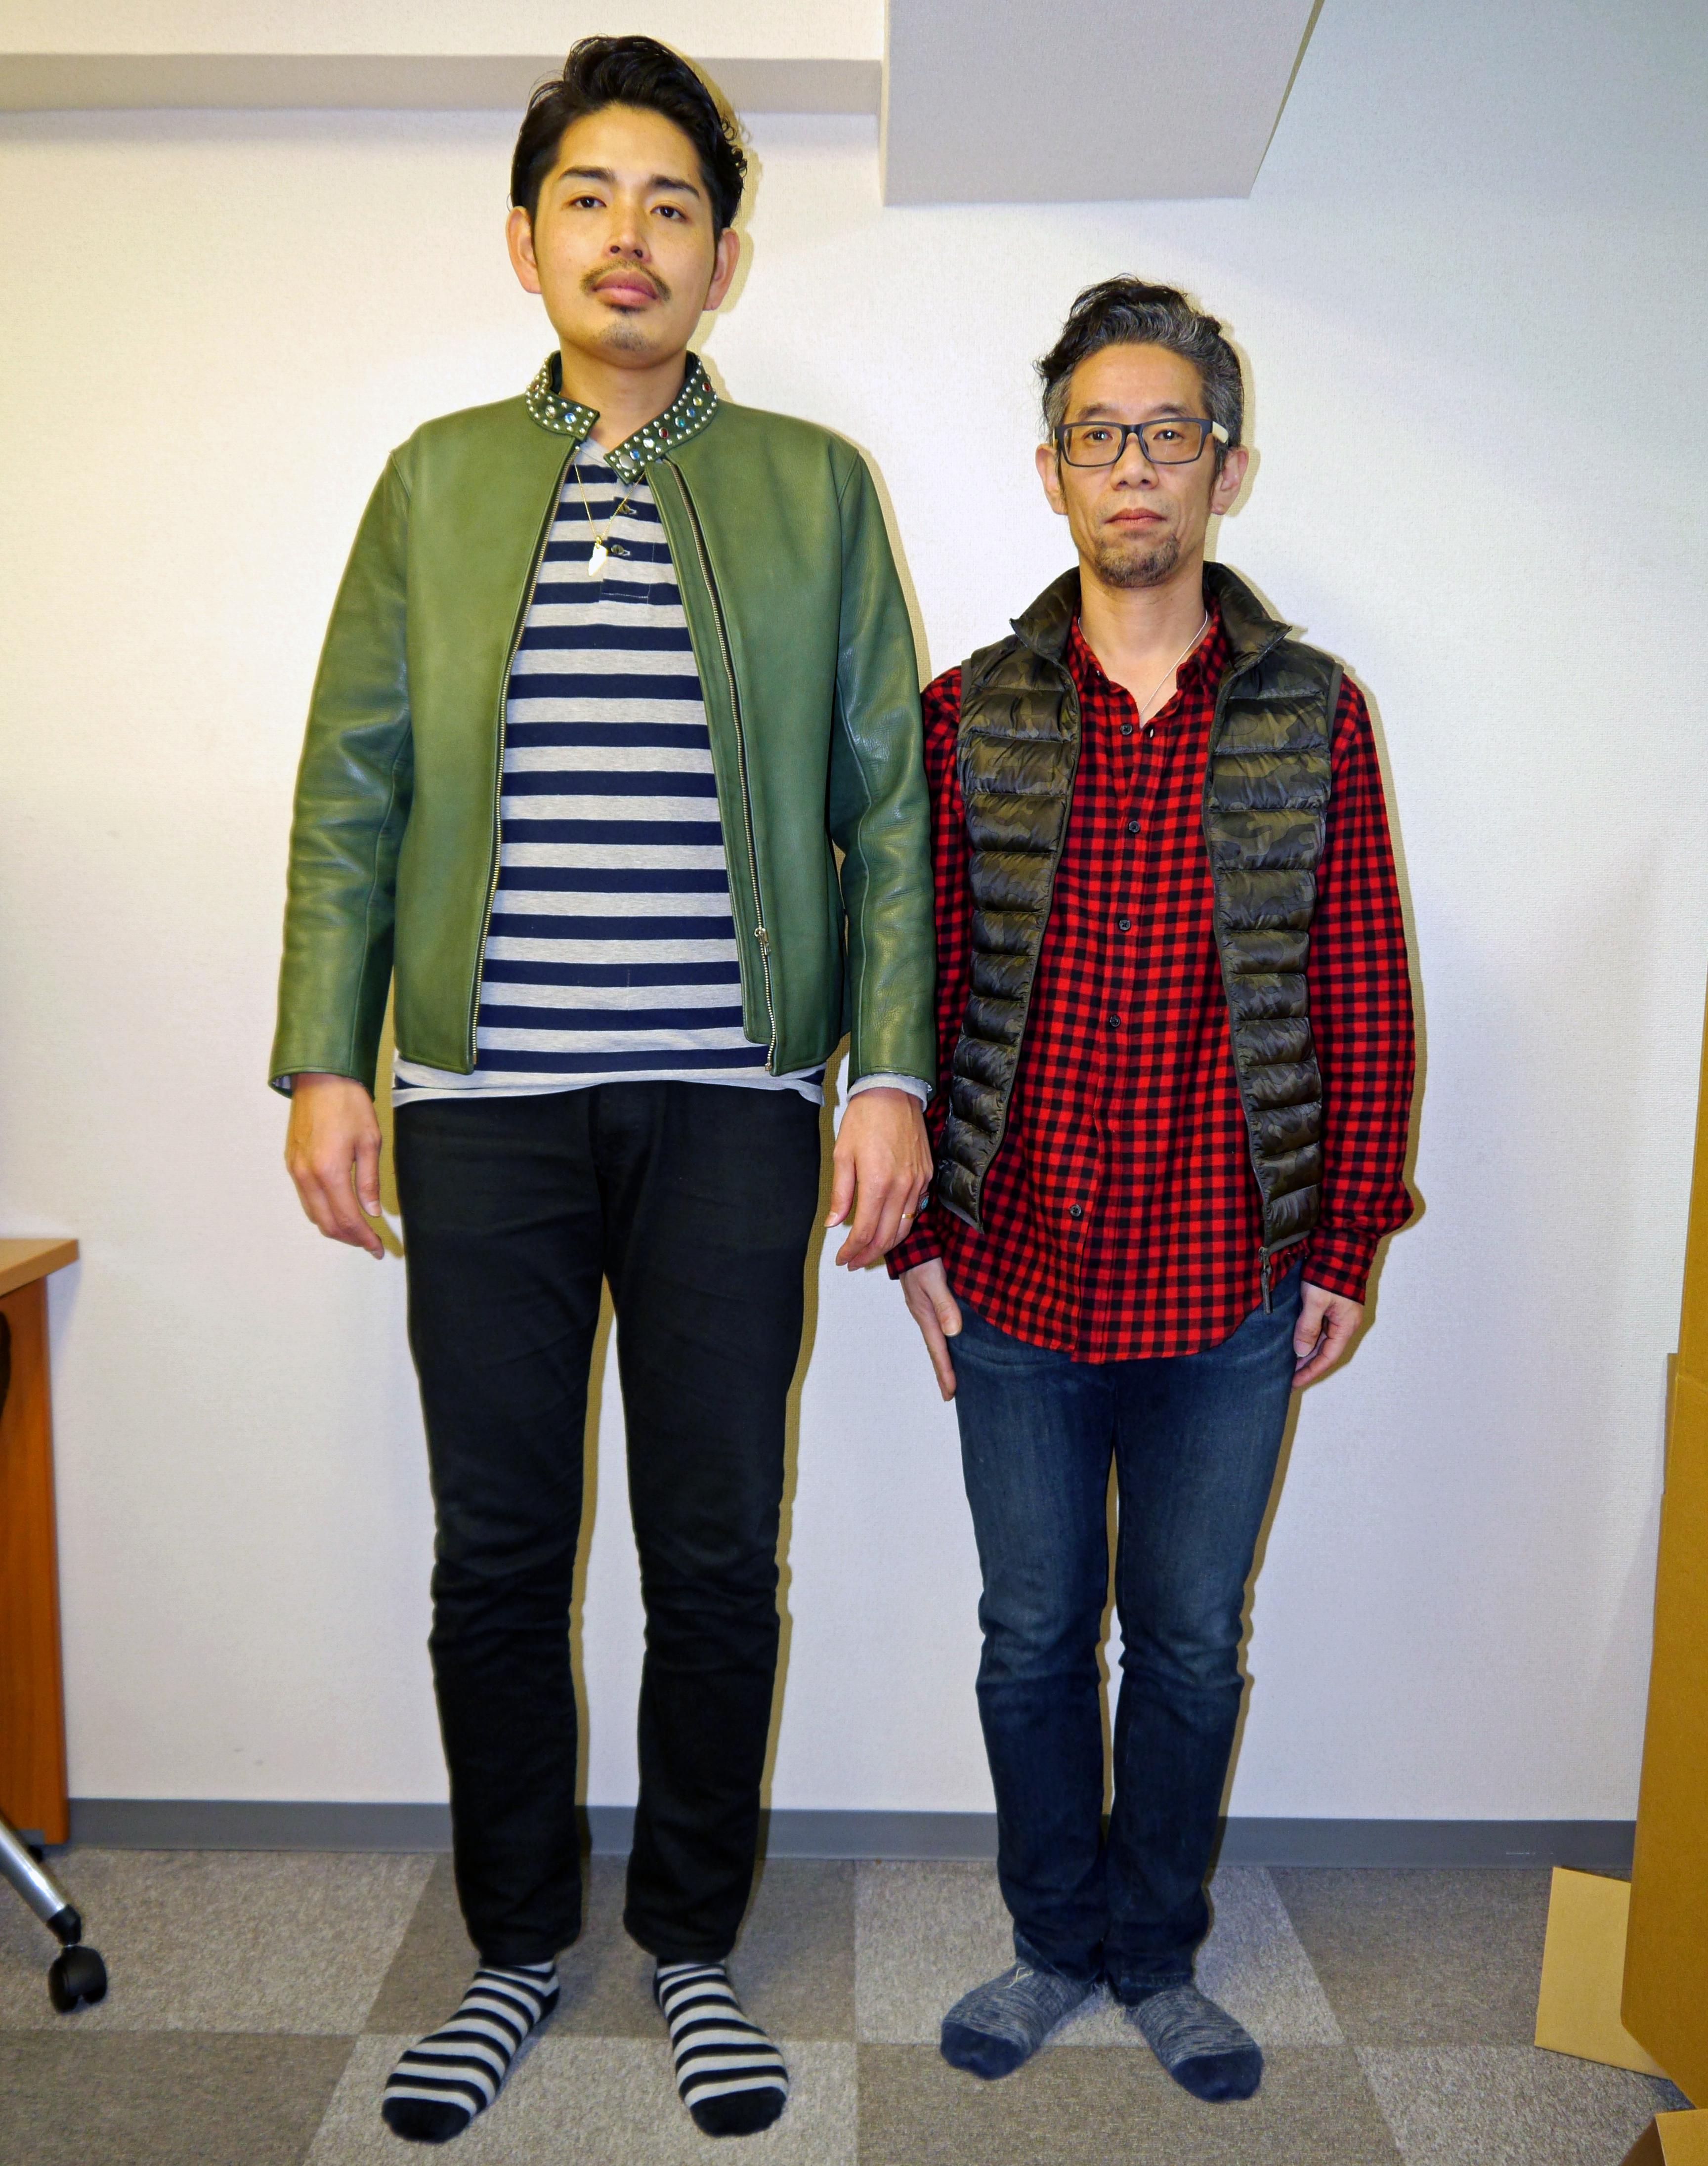 過酷な現実 長身イケメンと短足オッサンがguで買った同じ服を着たら いろいろおかしなことになった ロケットニュース24